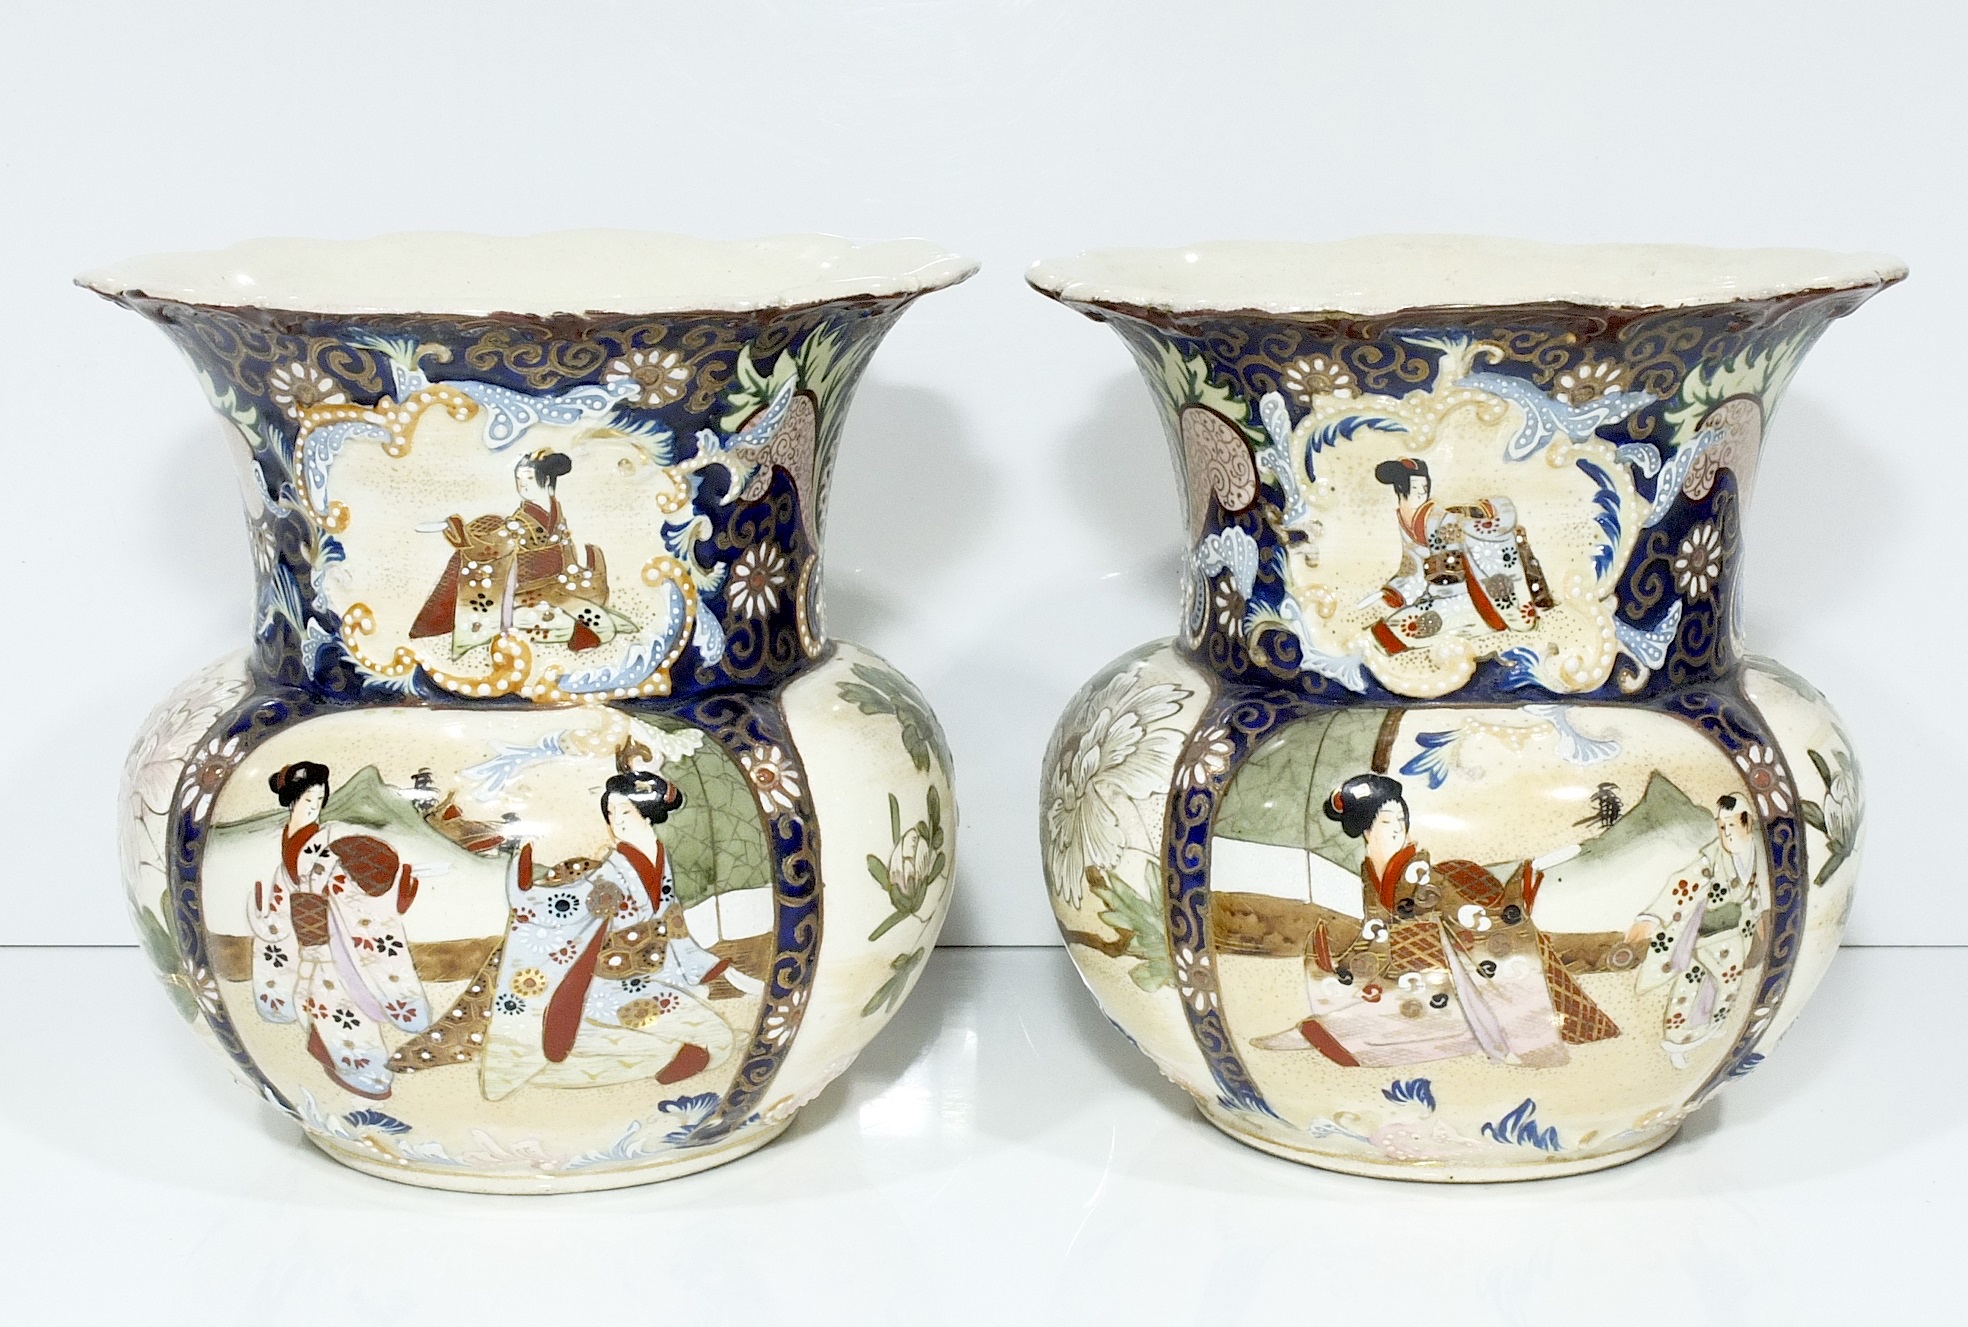 'Pair of Japanese Satsuma Large Bulb Shape Vases Meiji Period 1868-1912'